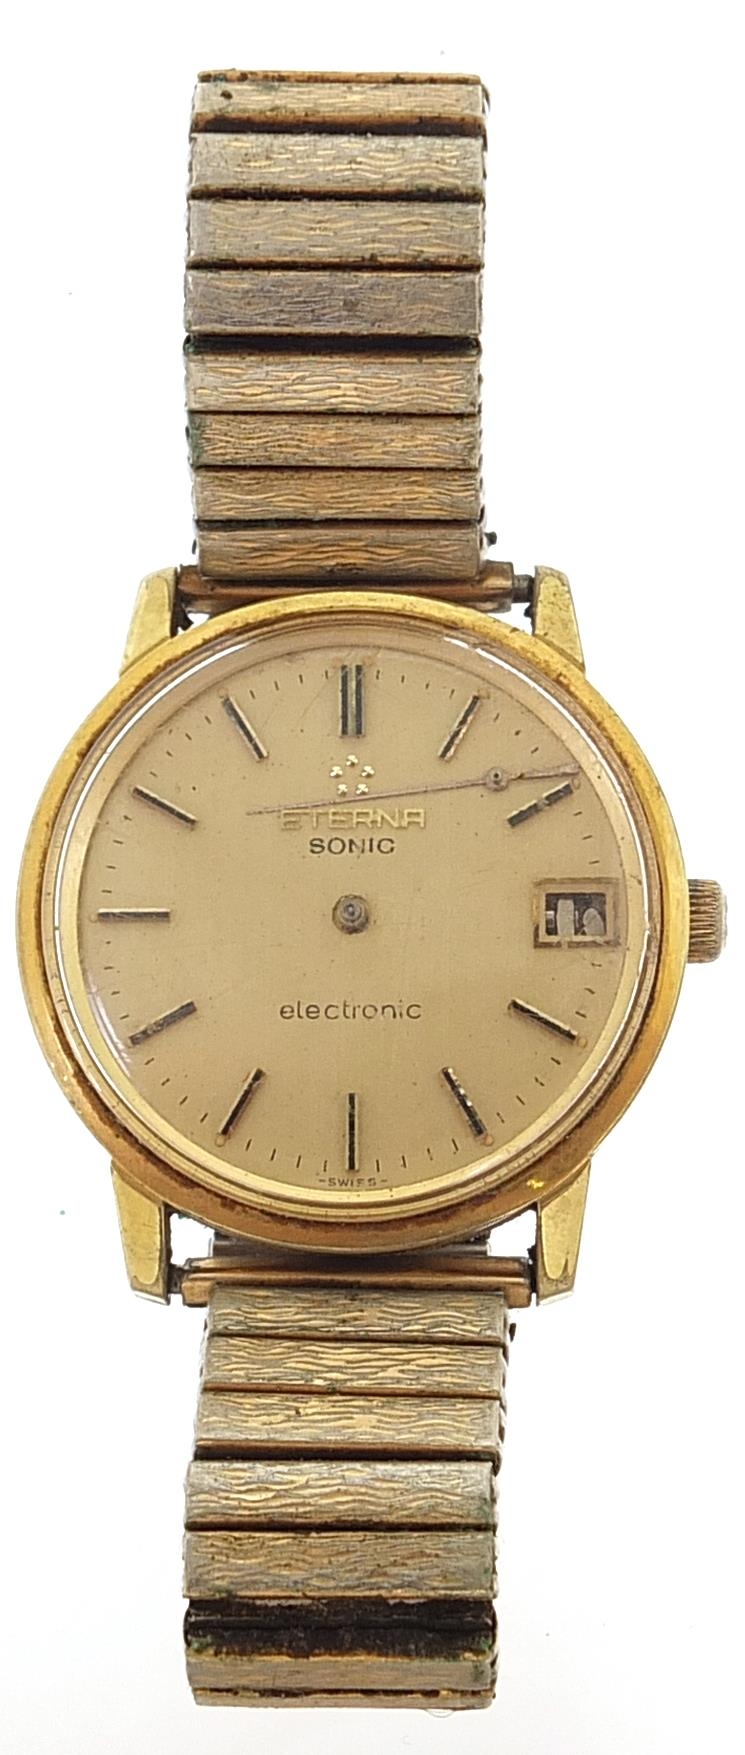 Eterna, vintage gentlemen's Eterna Sonic electronic wristwatch with date aperture, 35mm in diameter - Image 2 of 4